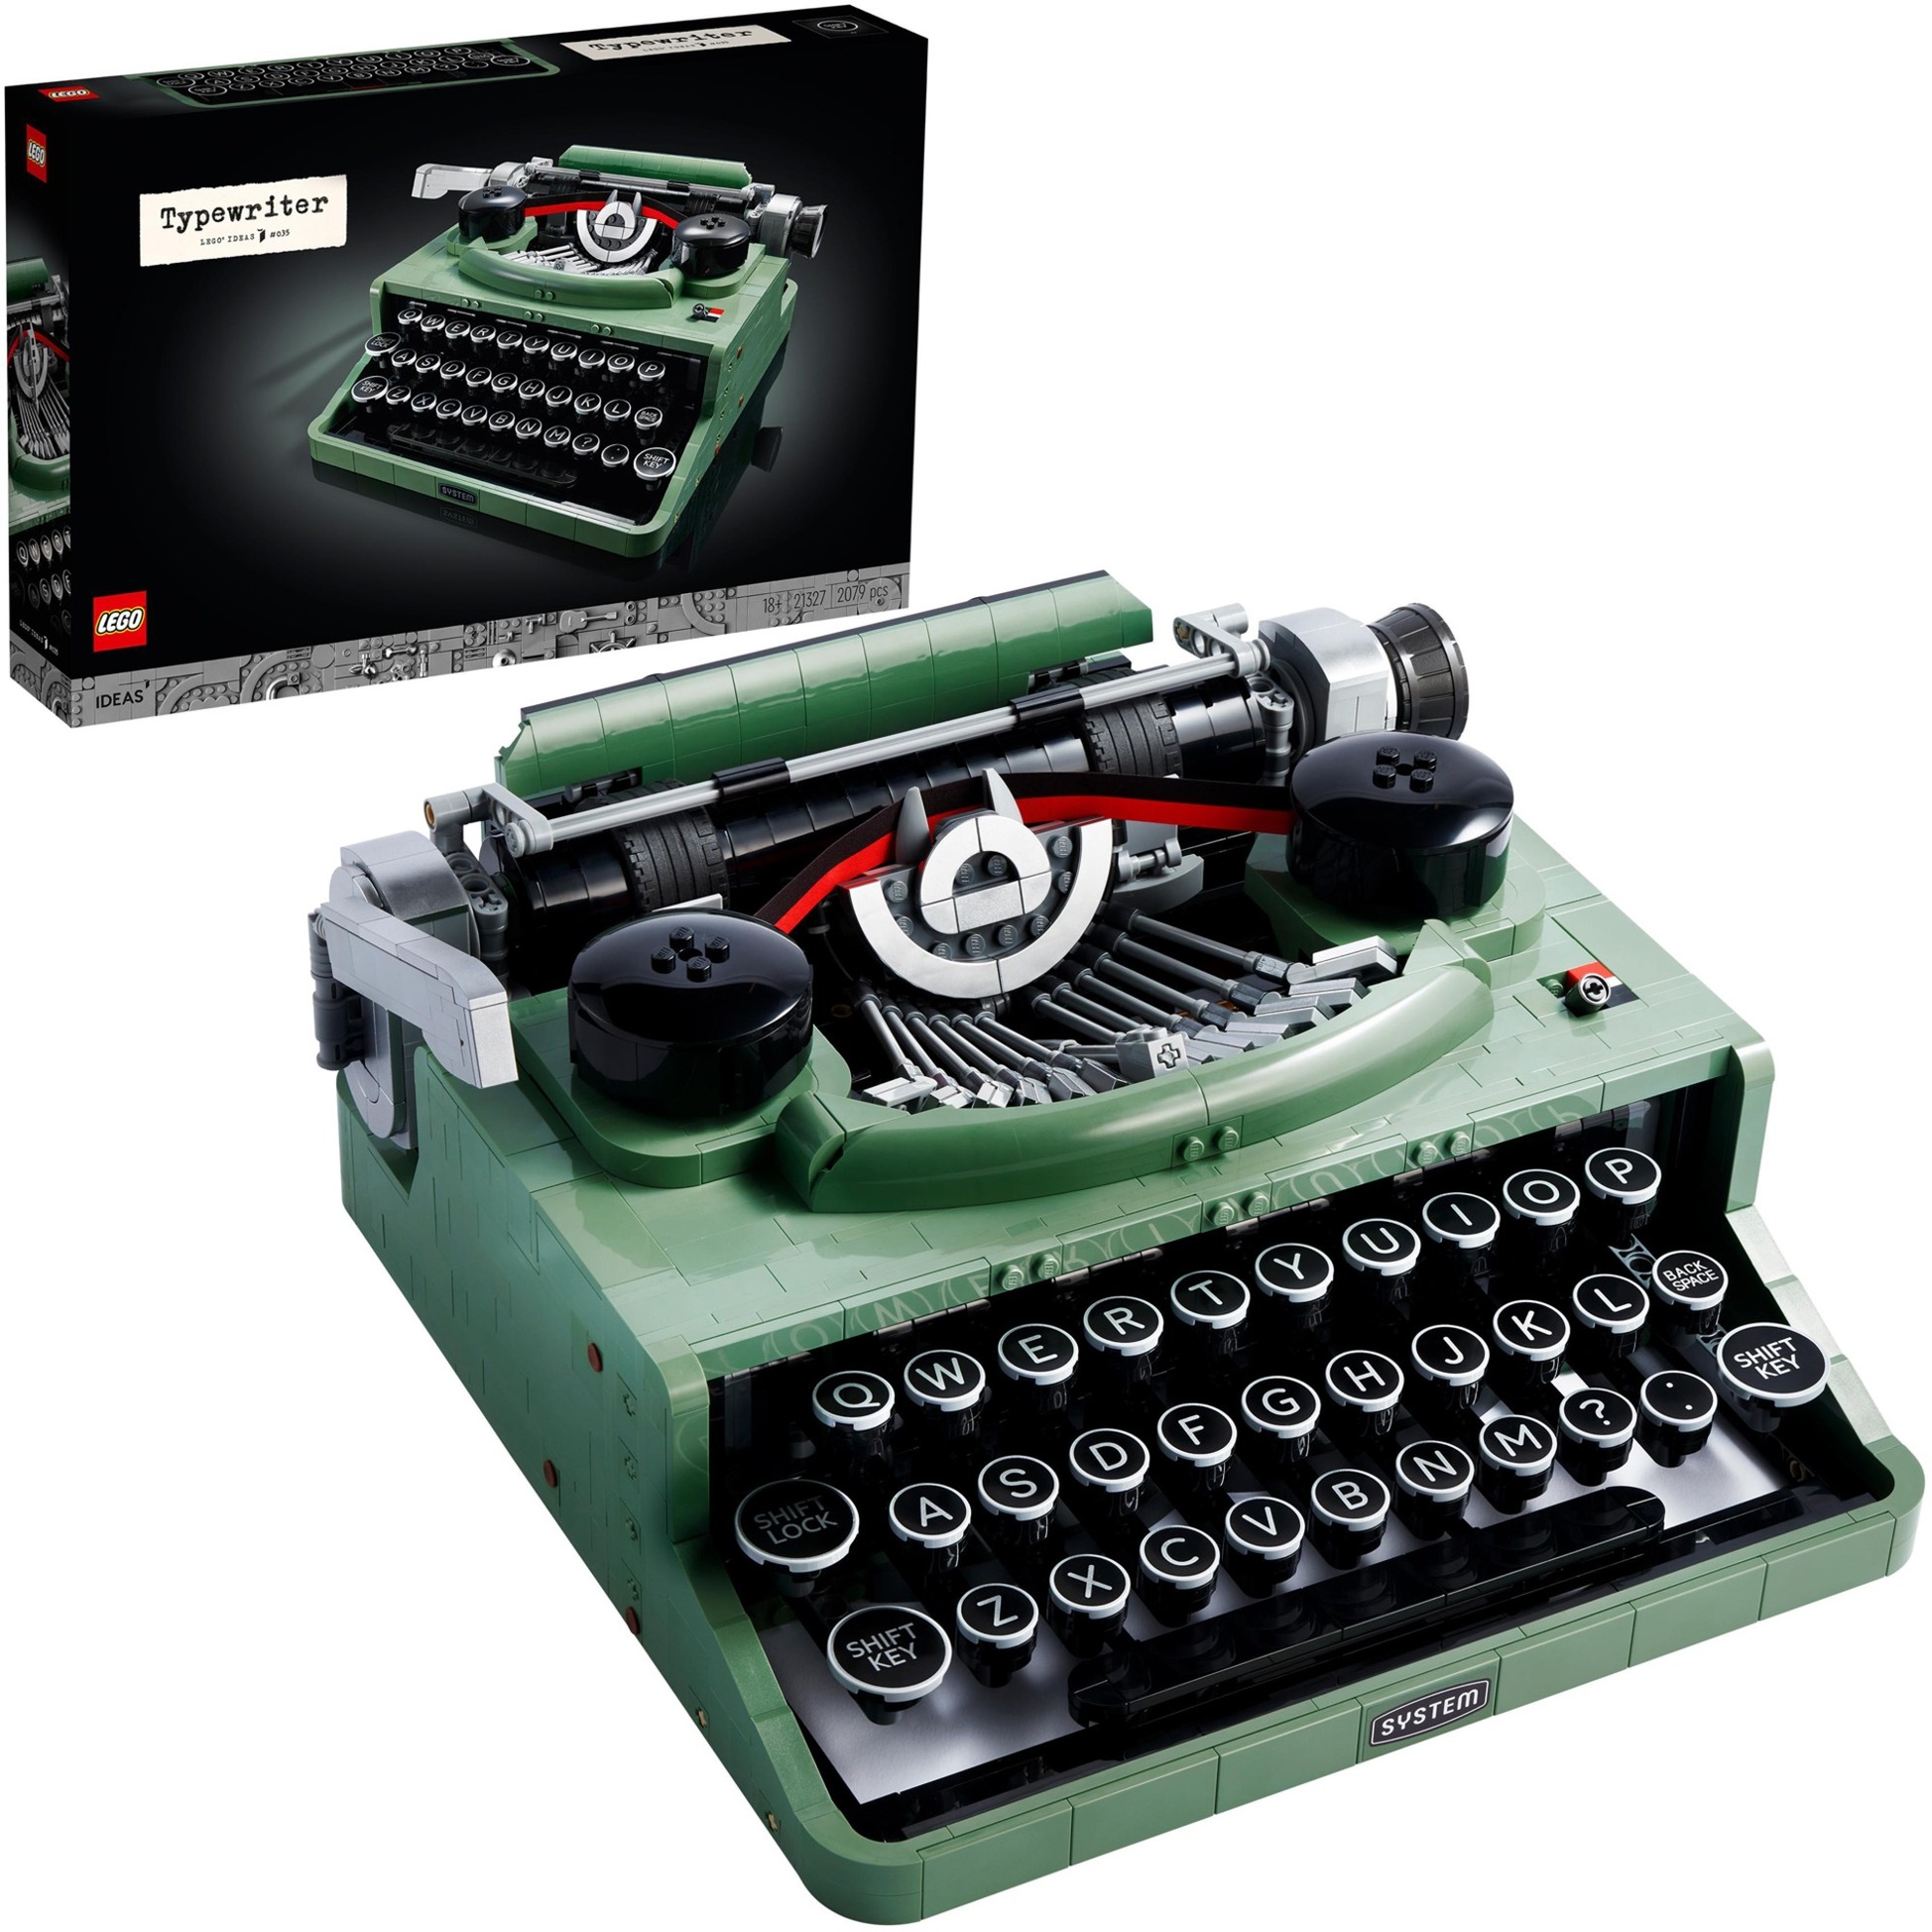 Spielzeug: Lego 21327 Ideas Schreibmaschine